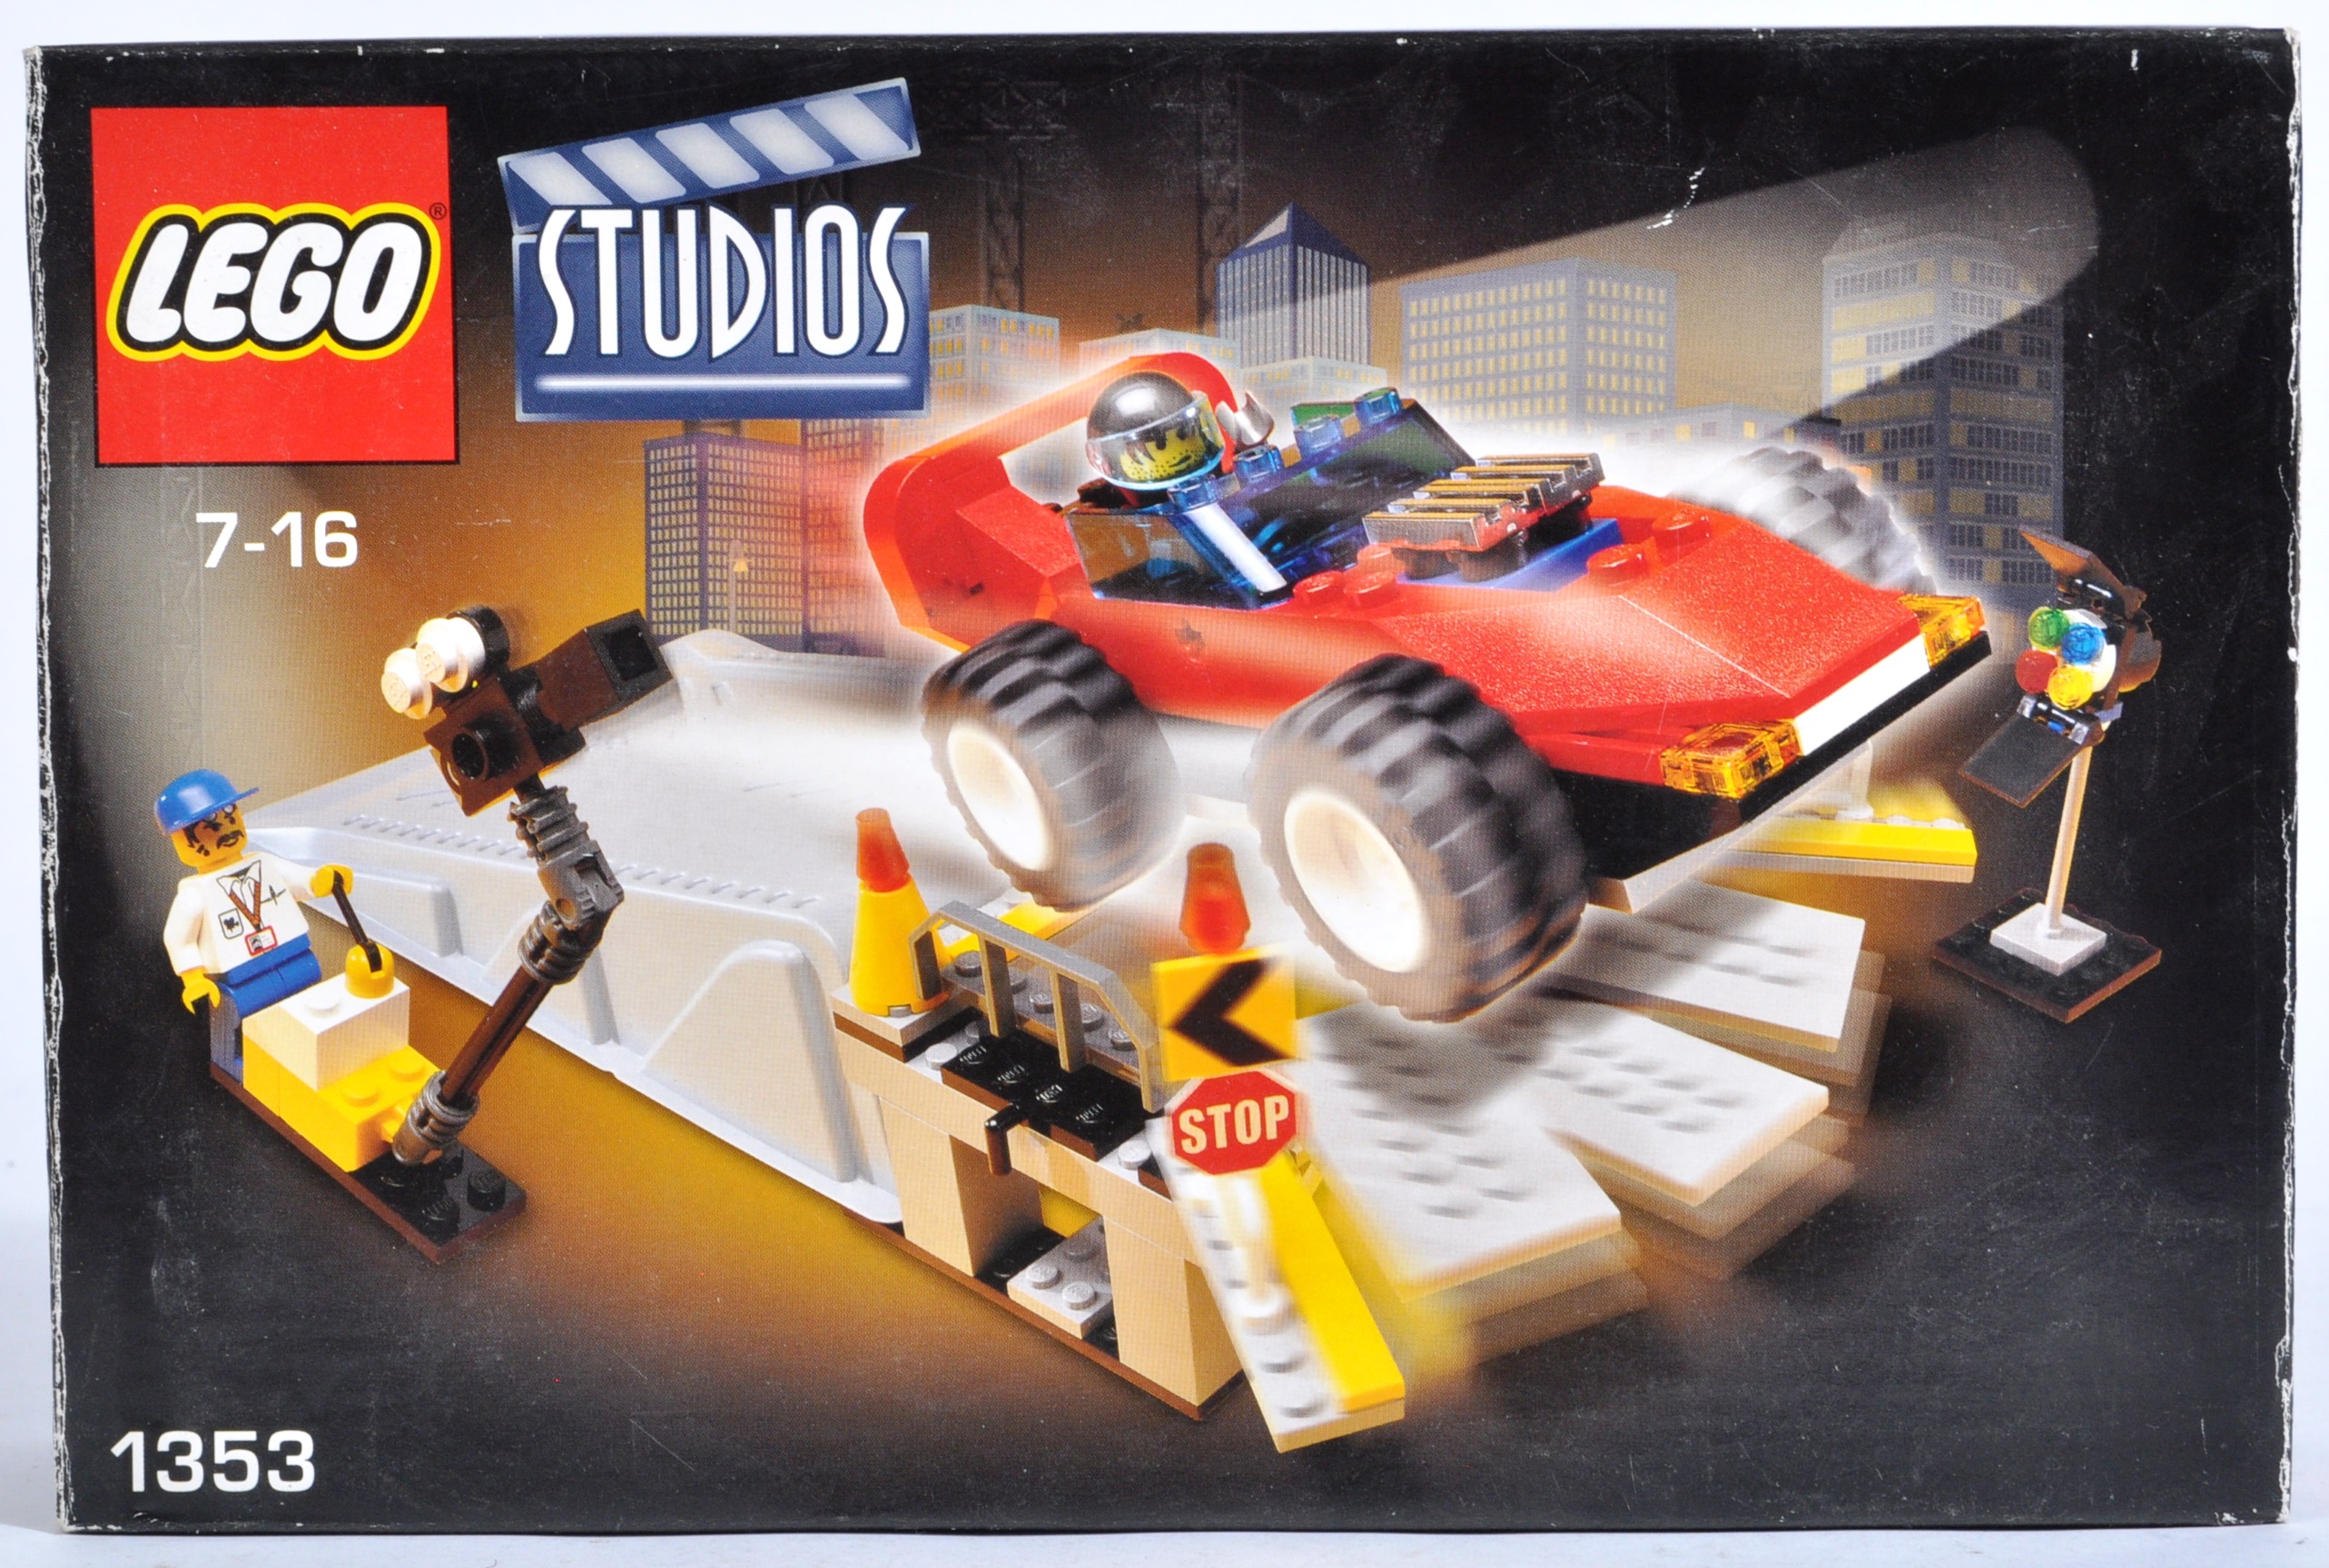 LEGO SETS - LEGO MOVIE AND LEGO STUDIOS - Image 5 of 13